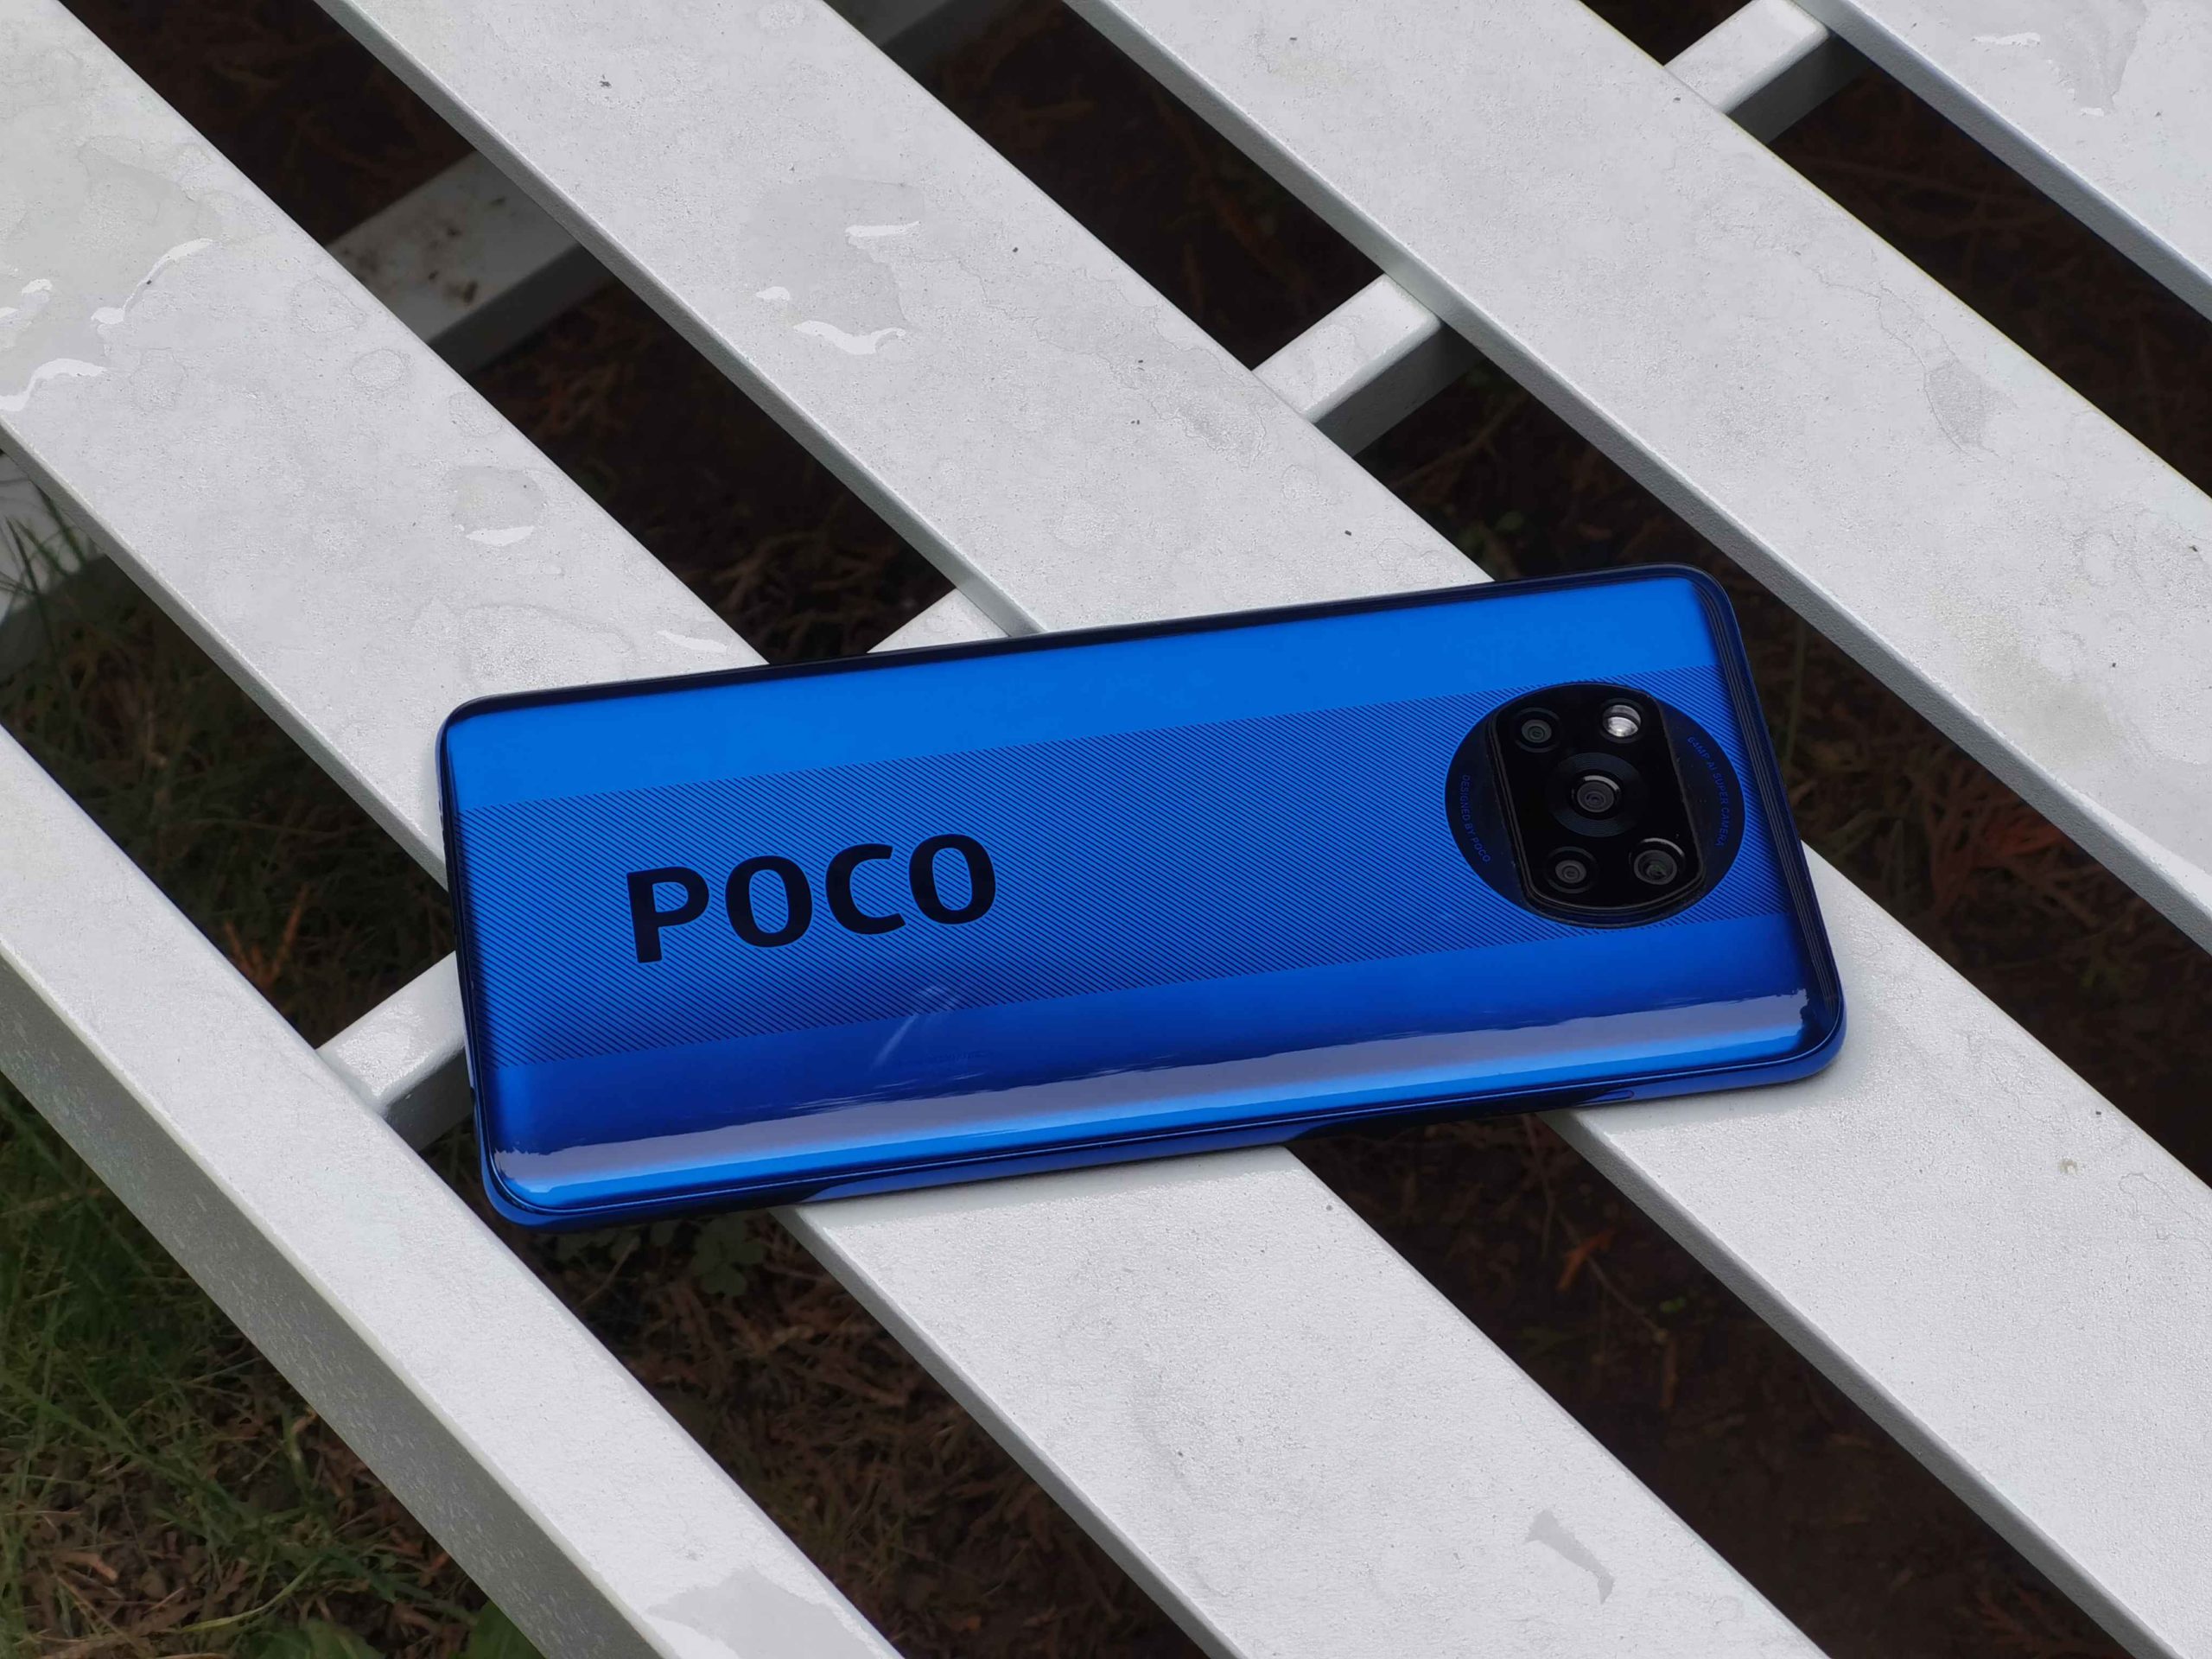 Xiaomi Poco X3 (no NFC) -  External Reviews